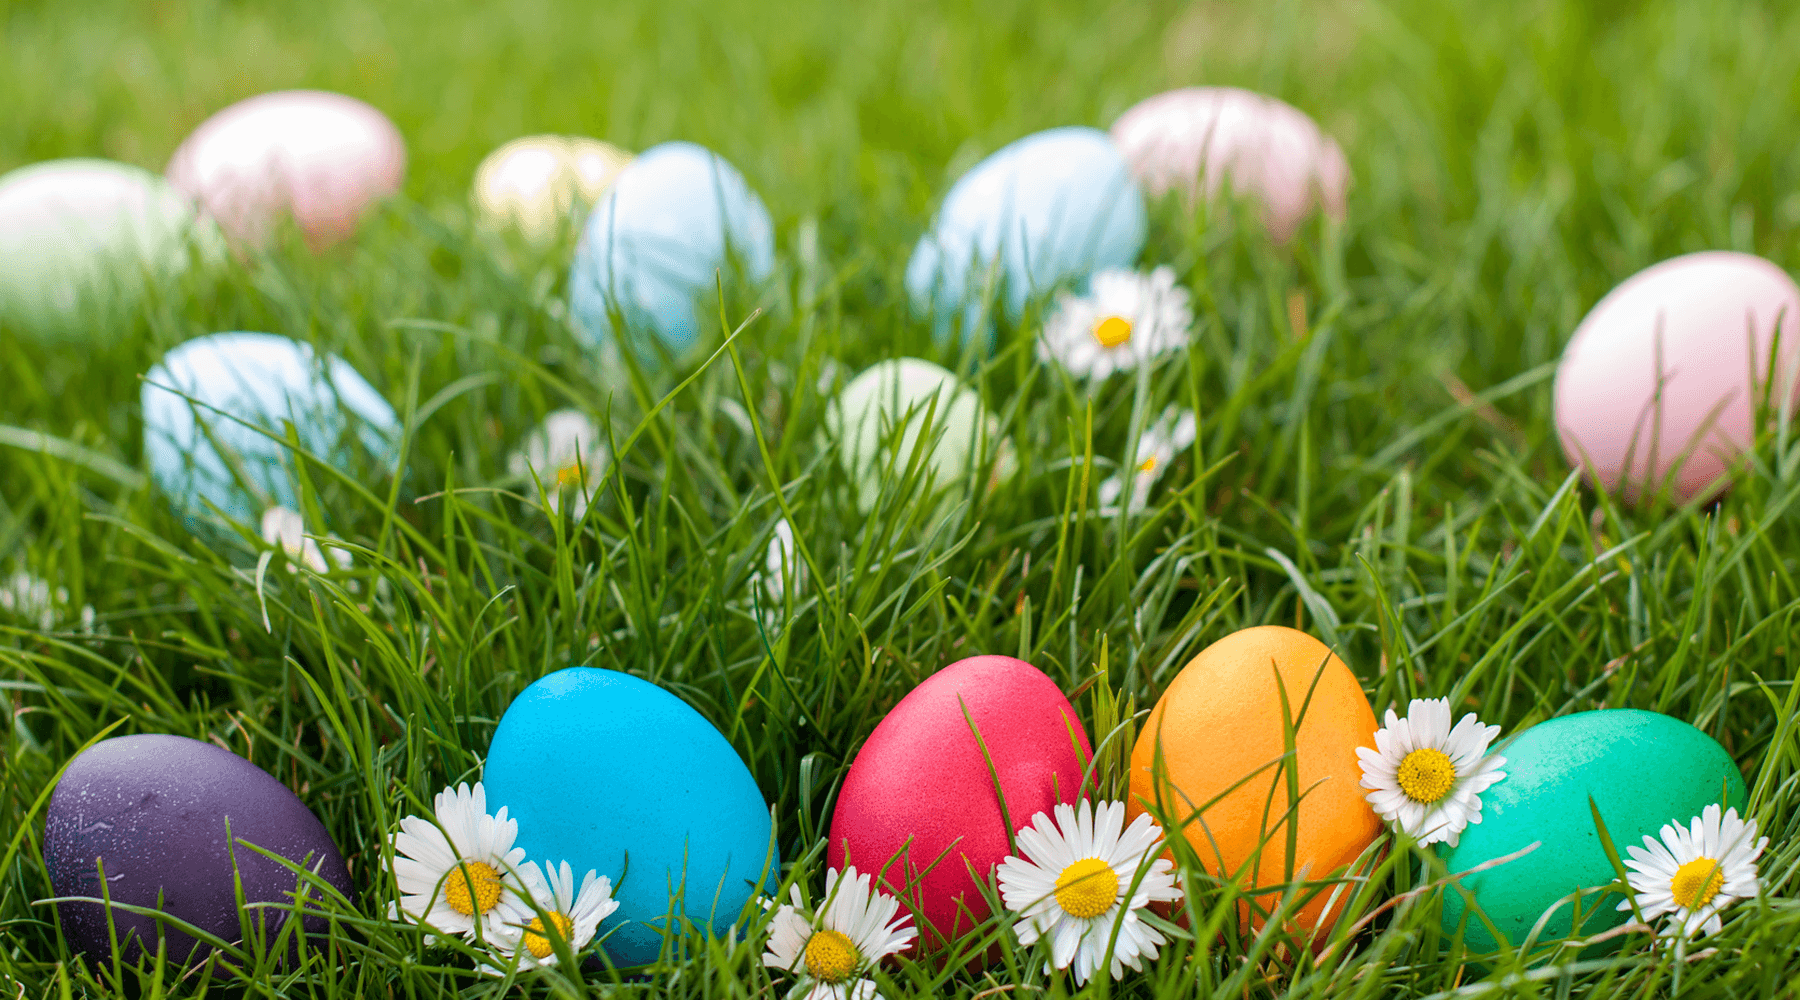 Novel Easter Egg Hunt Ideas